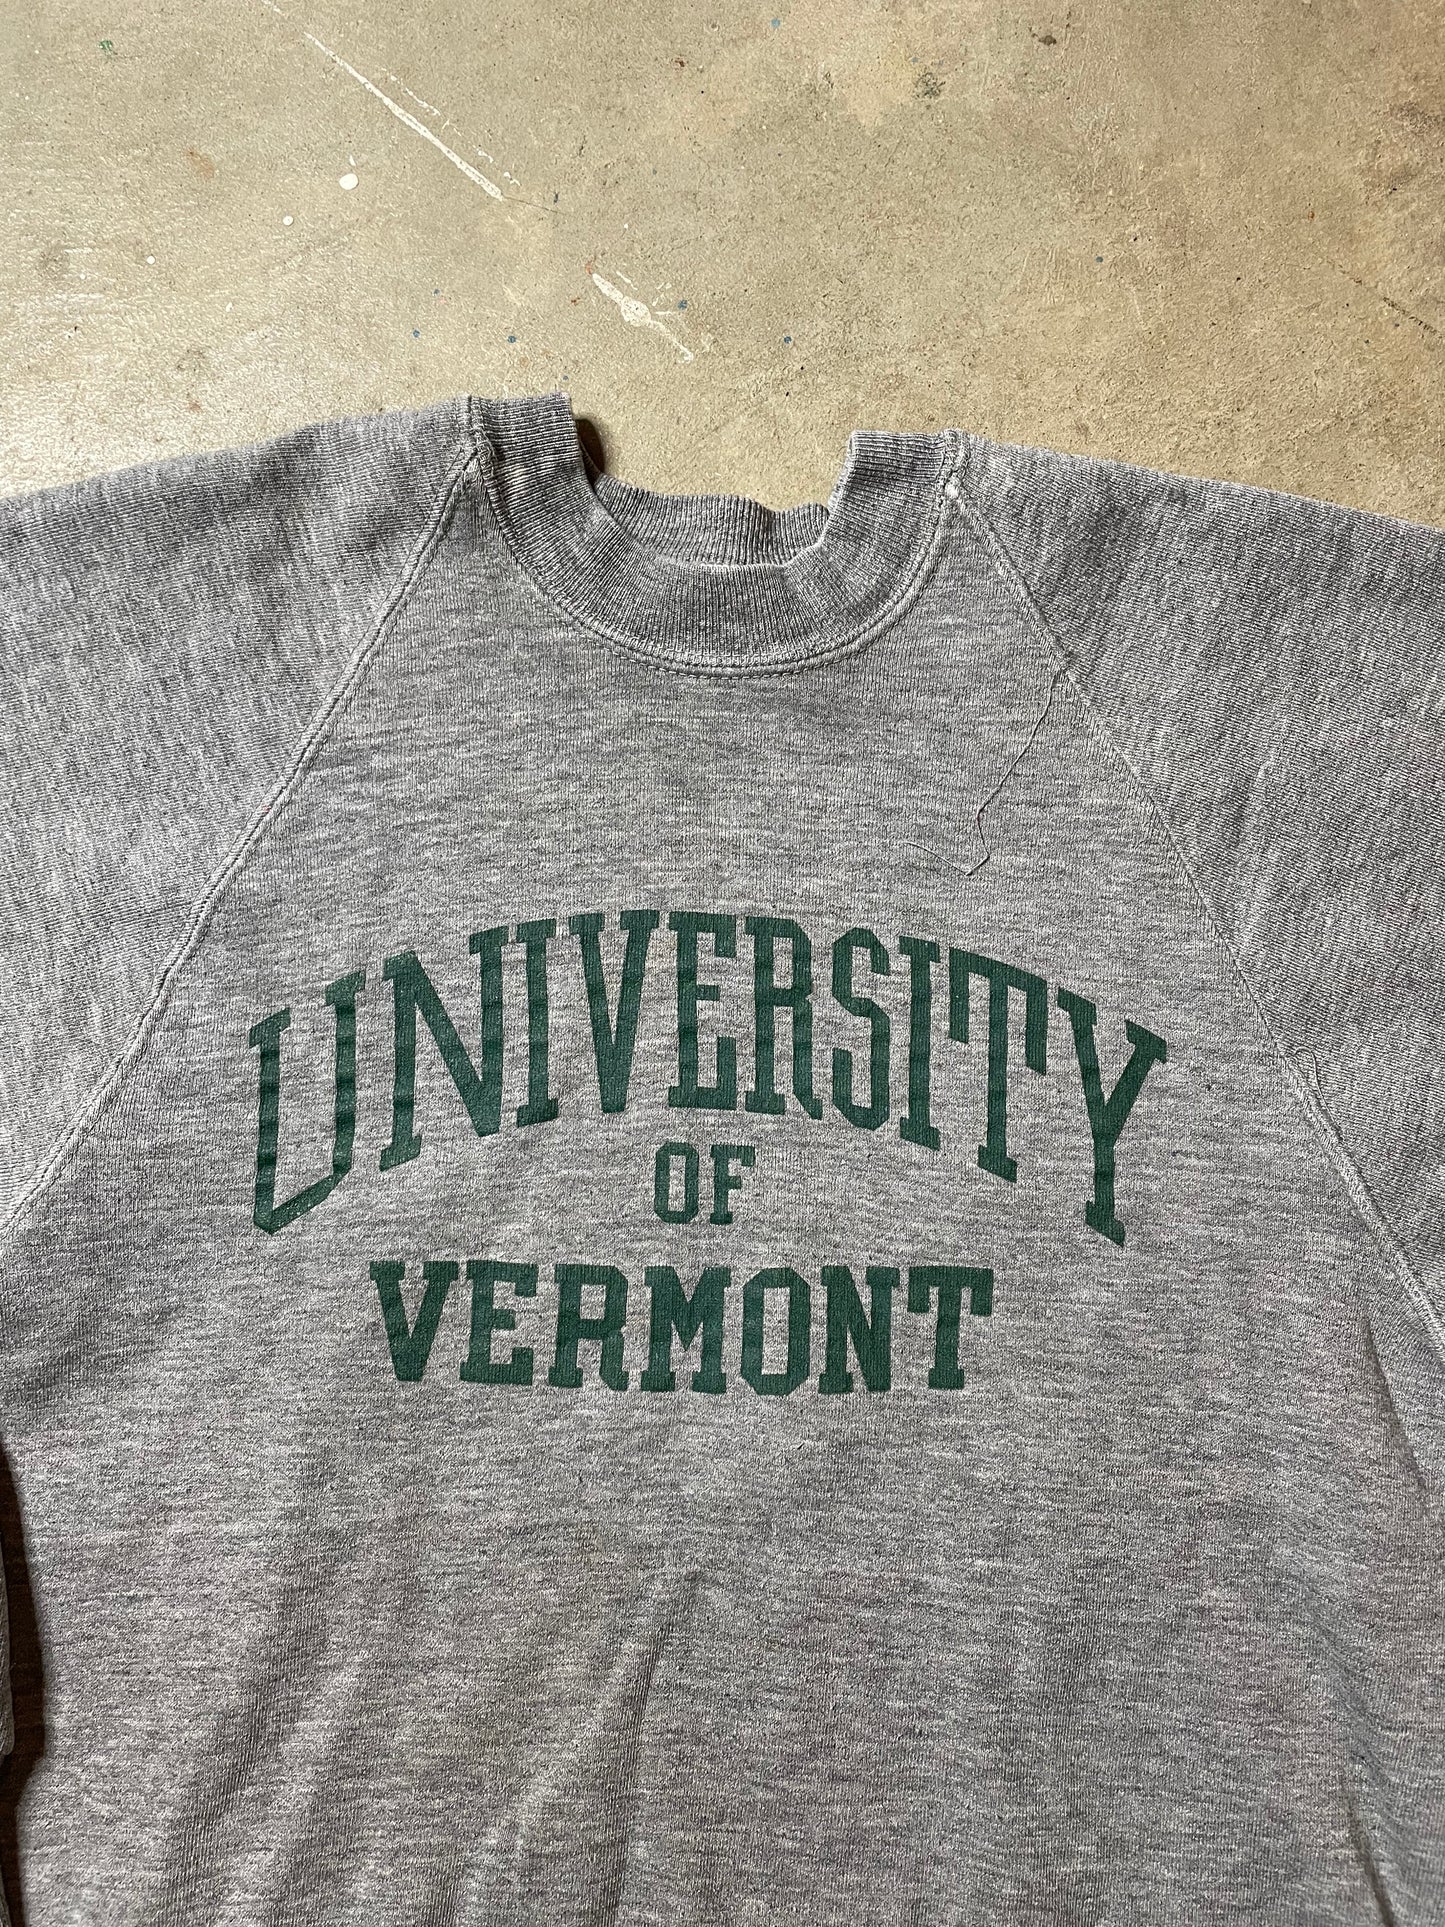 1970s University of Vermont Crewneck